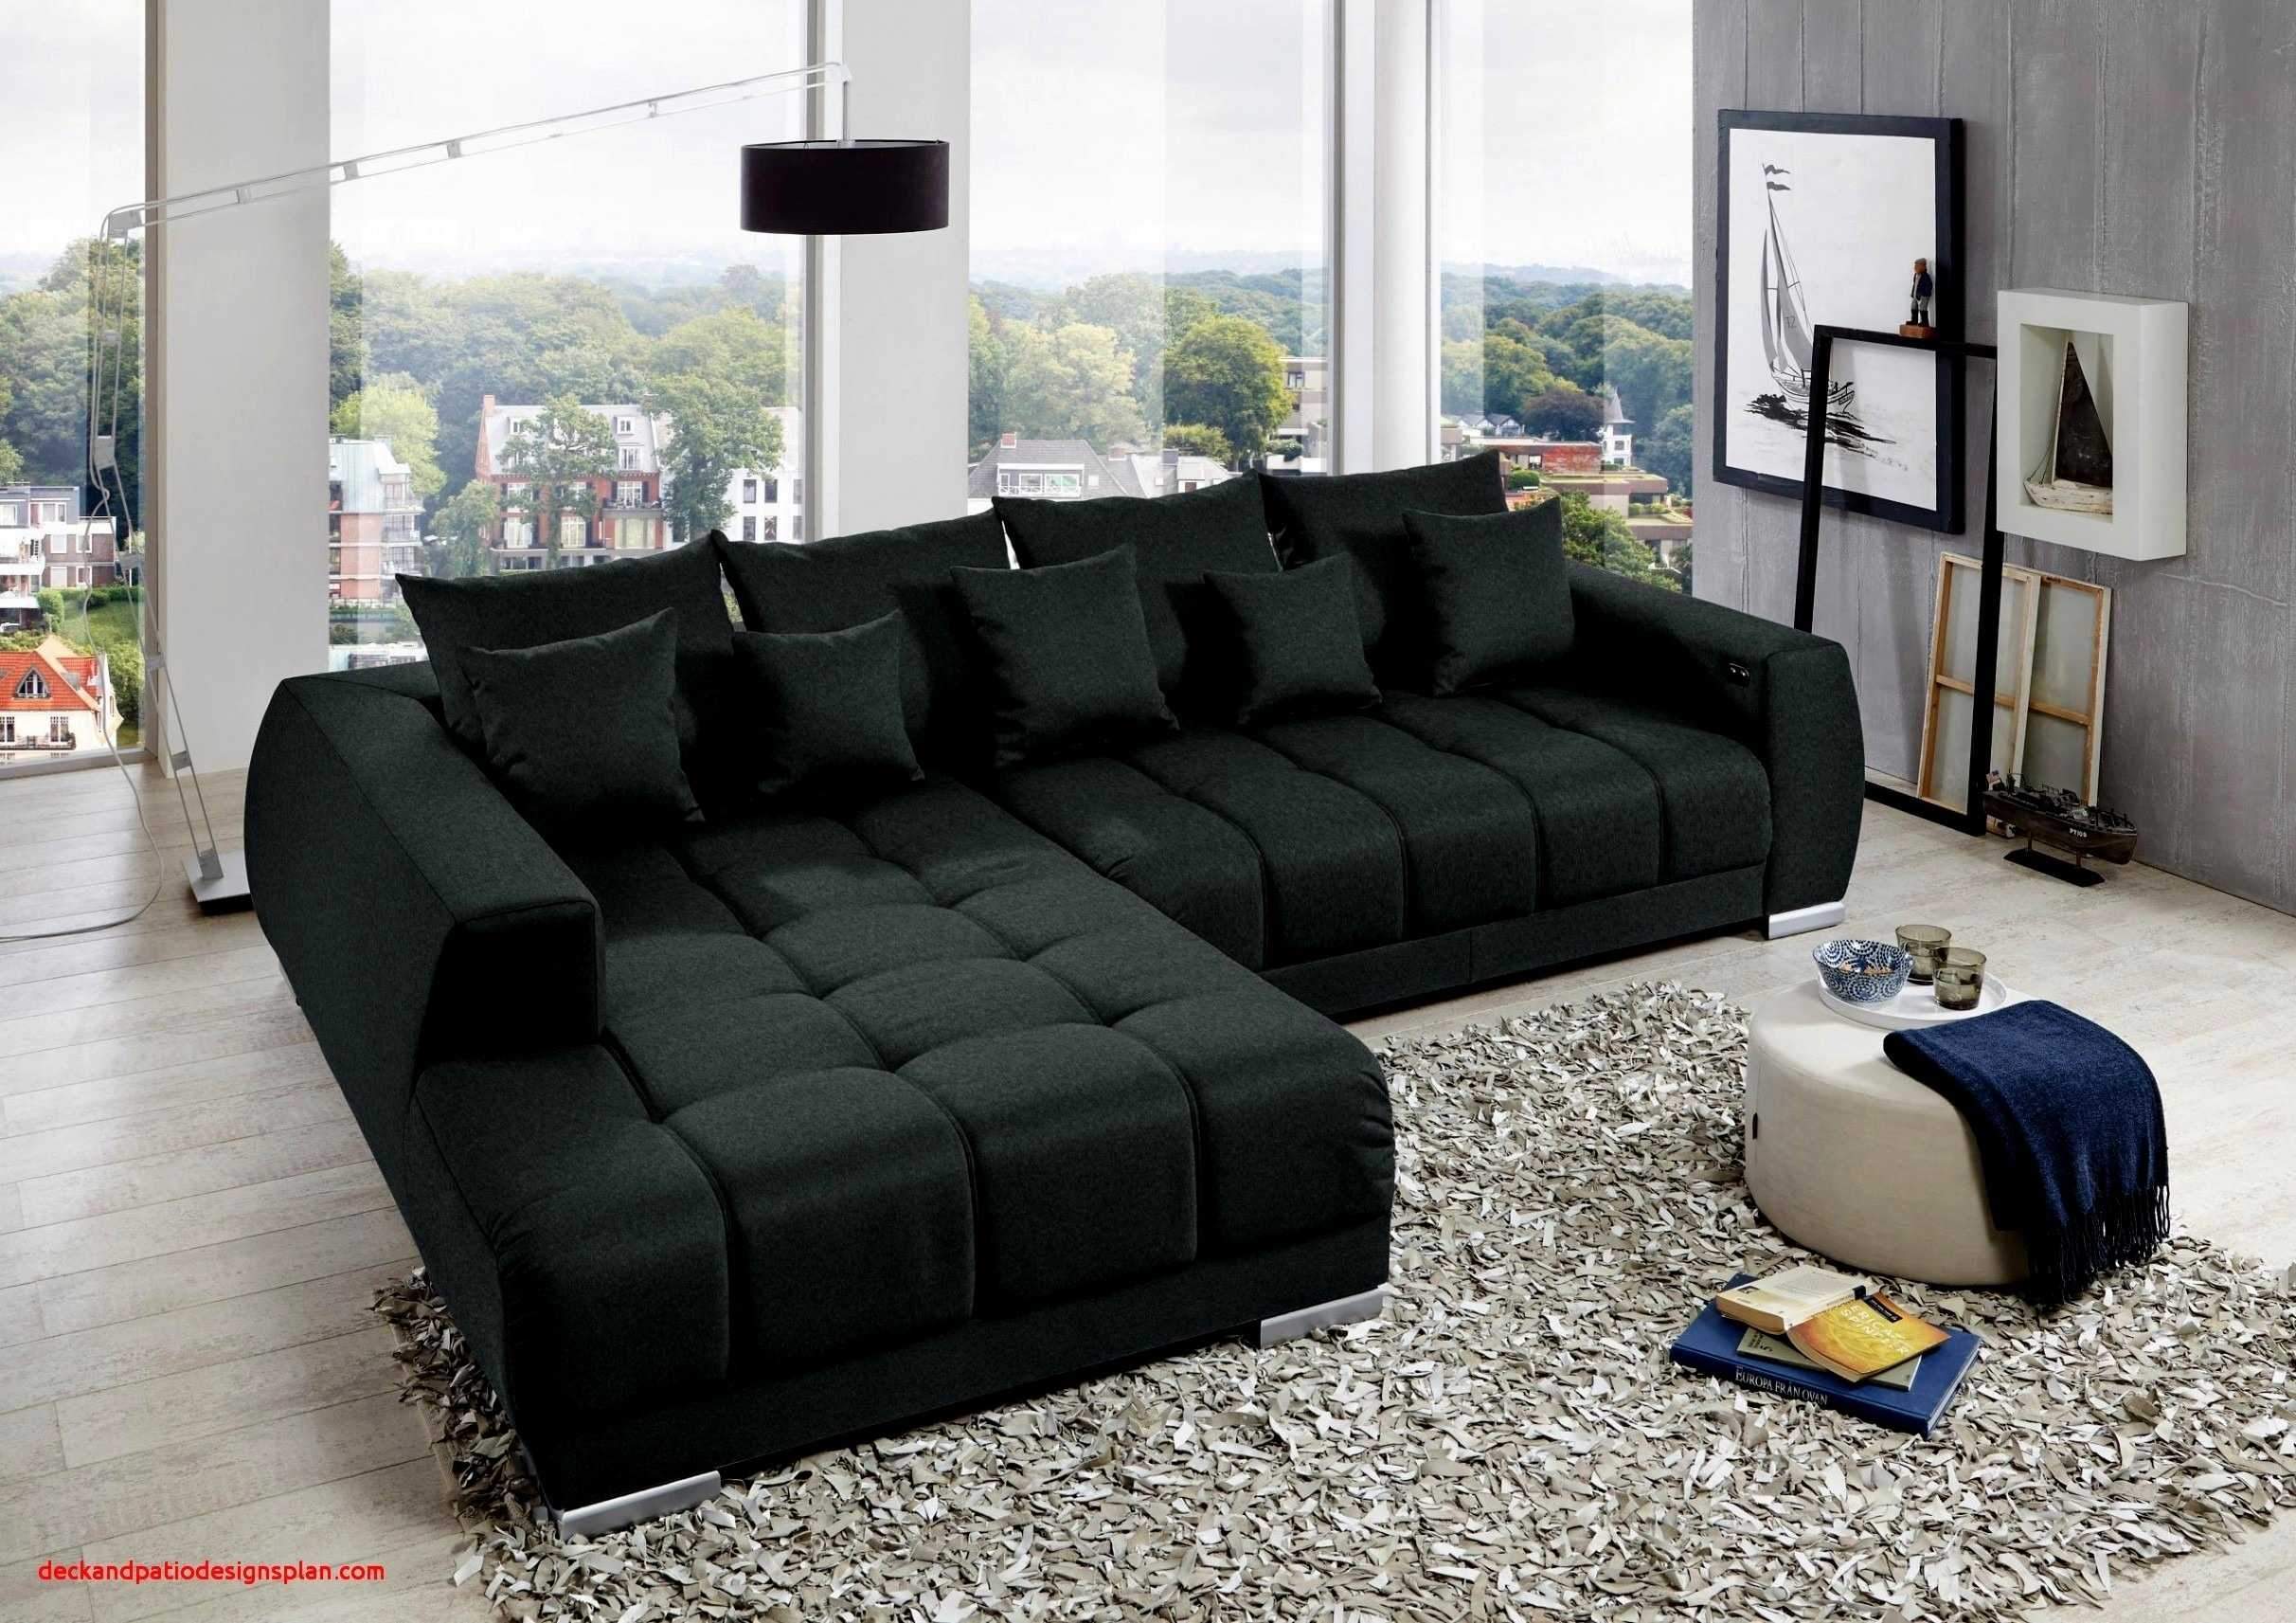 couch wohnzimmer das beste von wohnzimmer couch leder elegant big sofa microfaser neu sofa of couch wohnzimmer